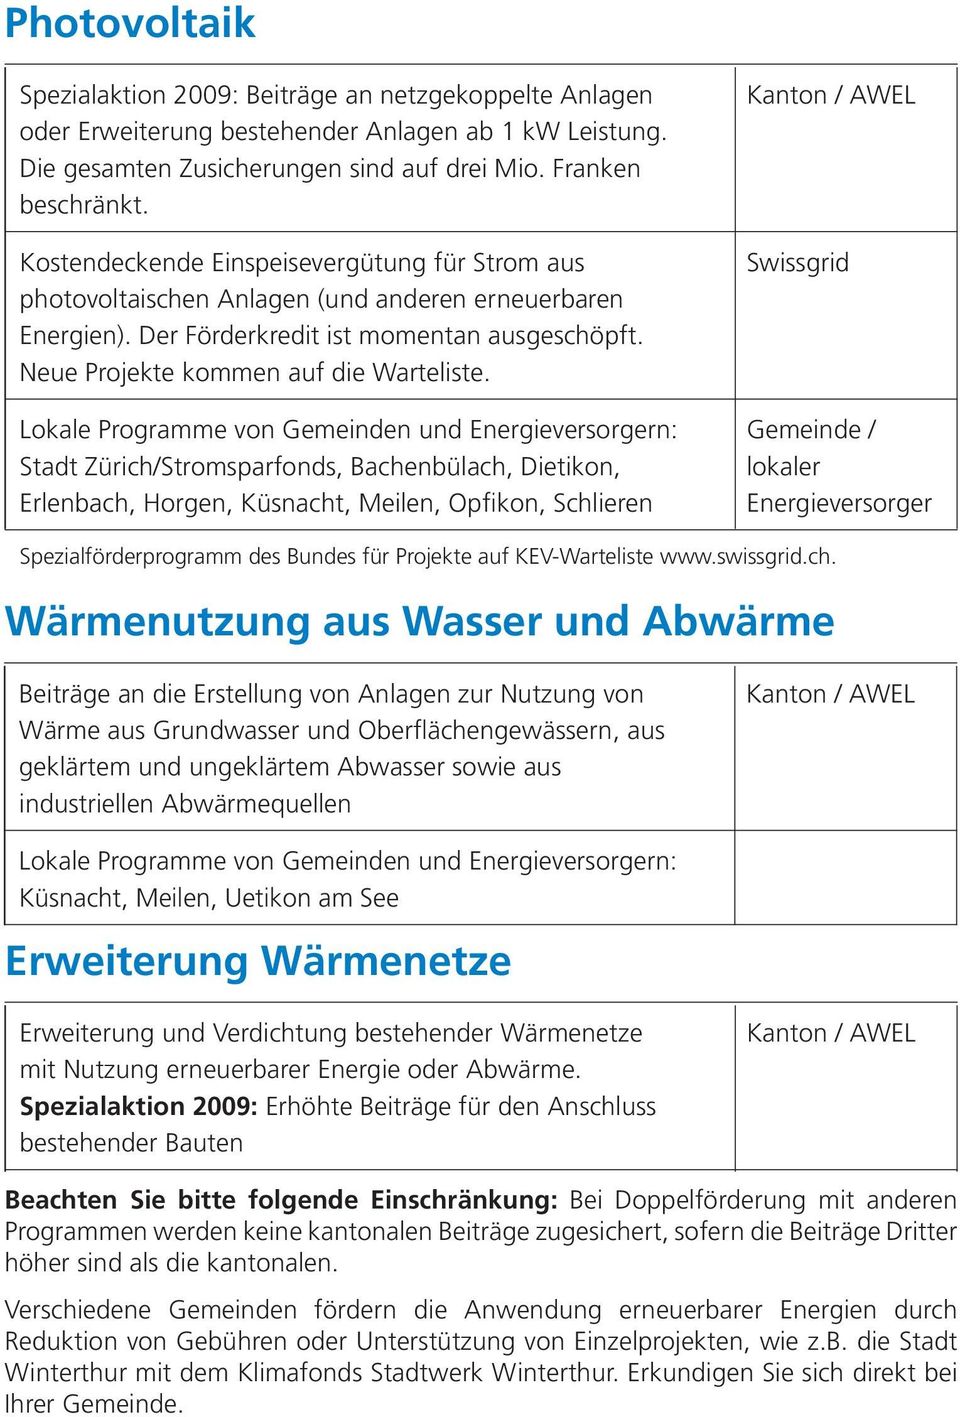 Swissgrid Lokale Programme von Gemeinden und Energieversorgern: Gemeinde / Stadt Zürich/Stromsparfonds, Bachenbülach, Dietikon, lokaler Erlenbach, Horgen, Küsnacht, Meilen, Opfikon, Schlieren